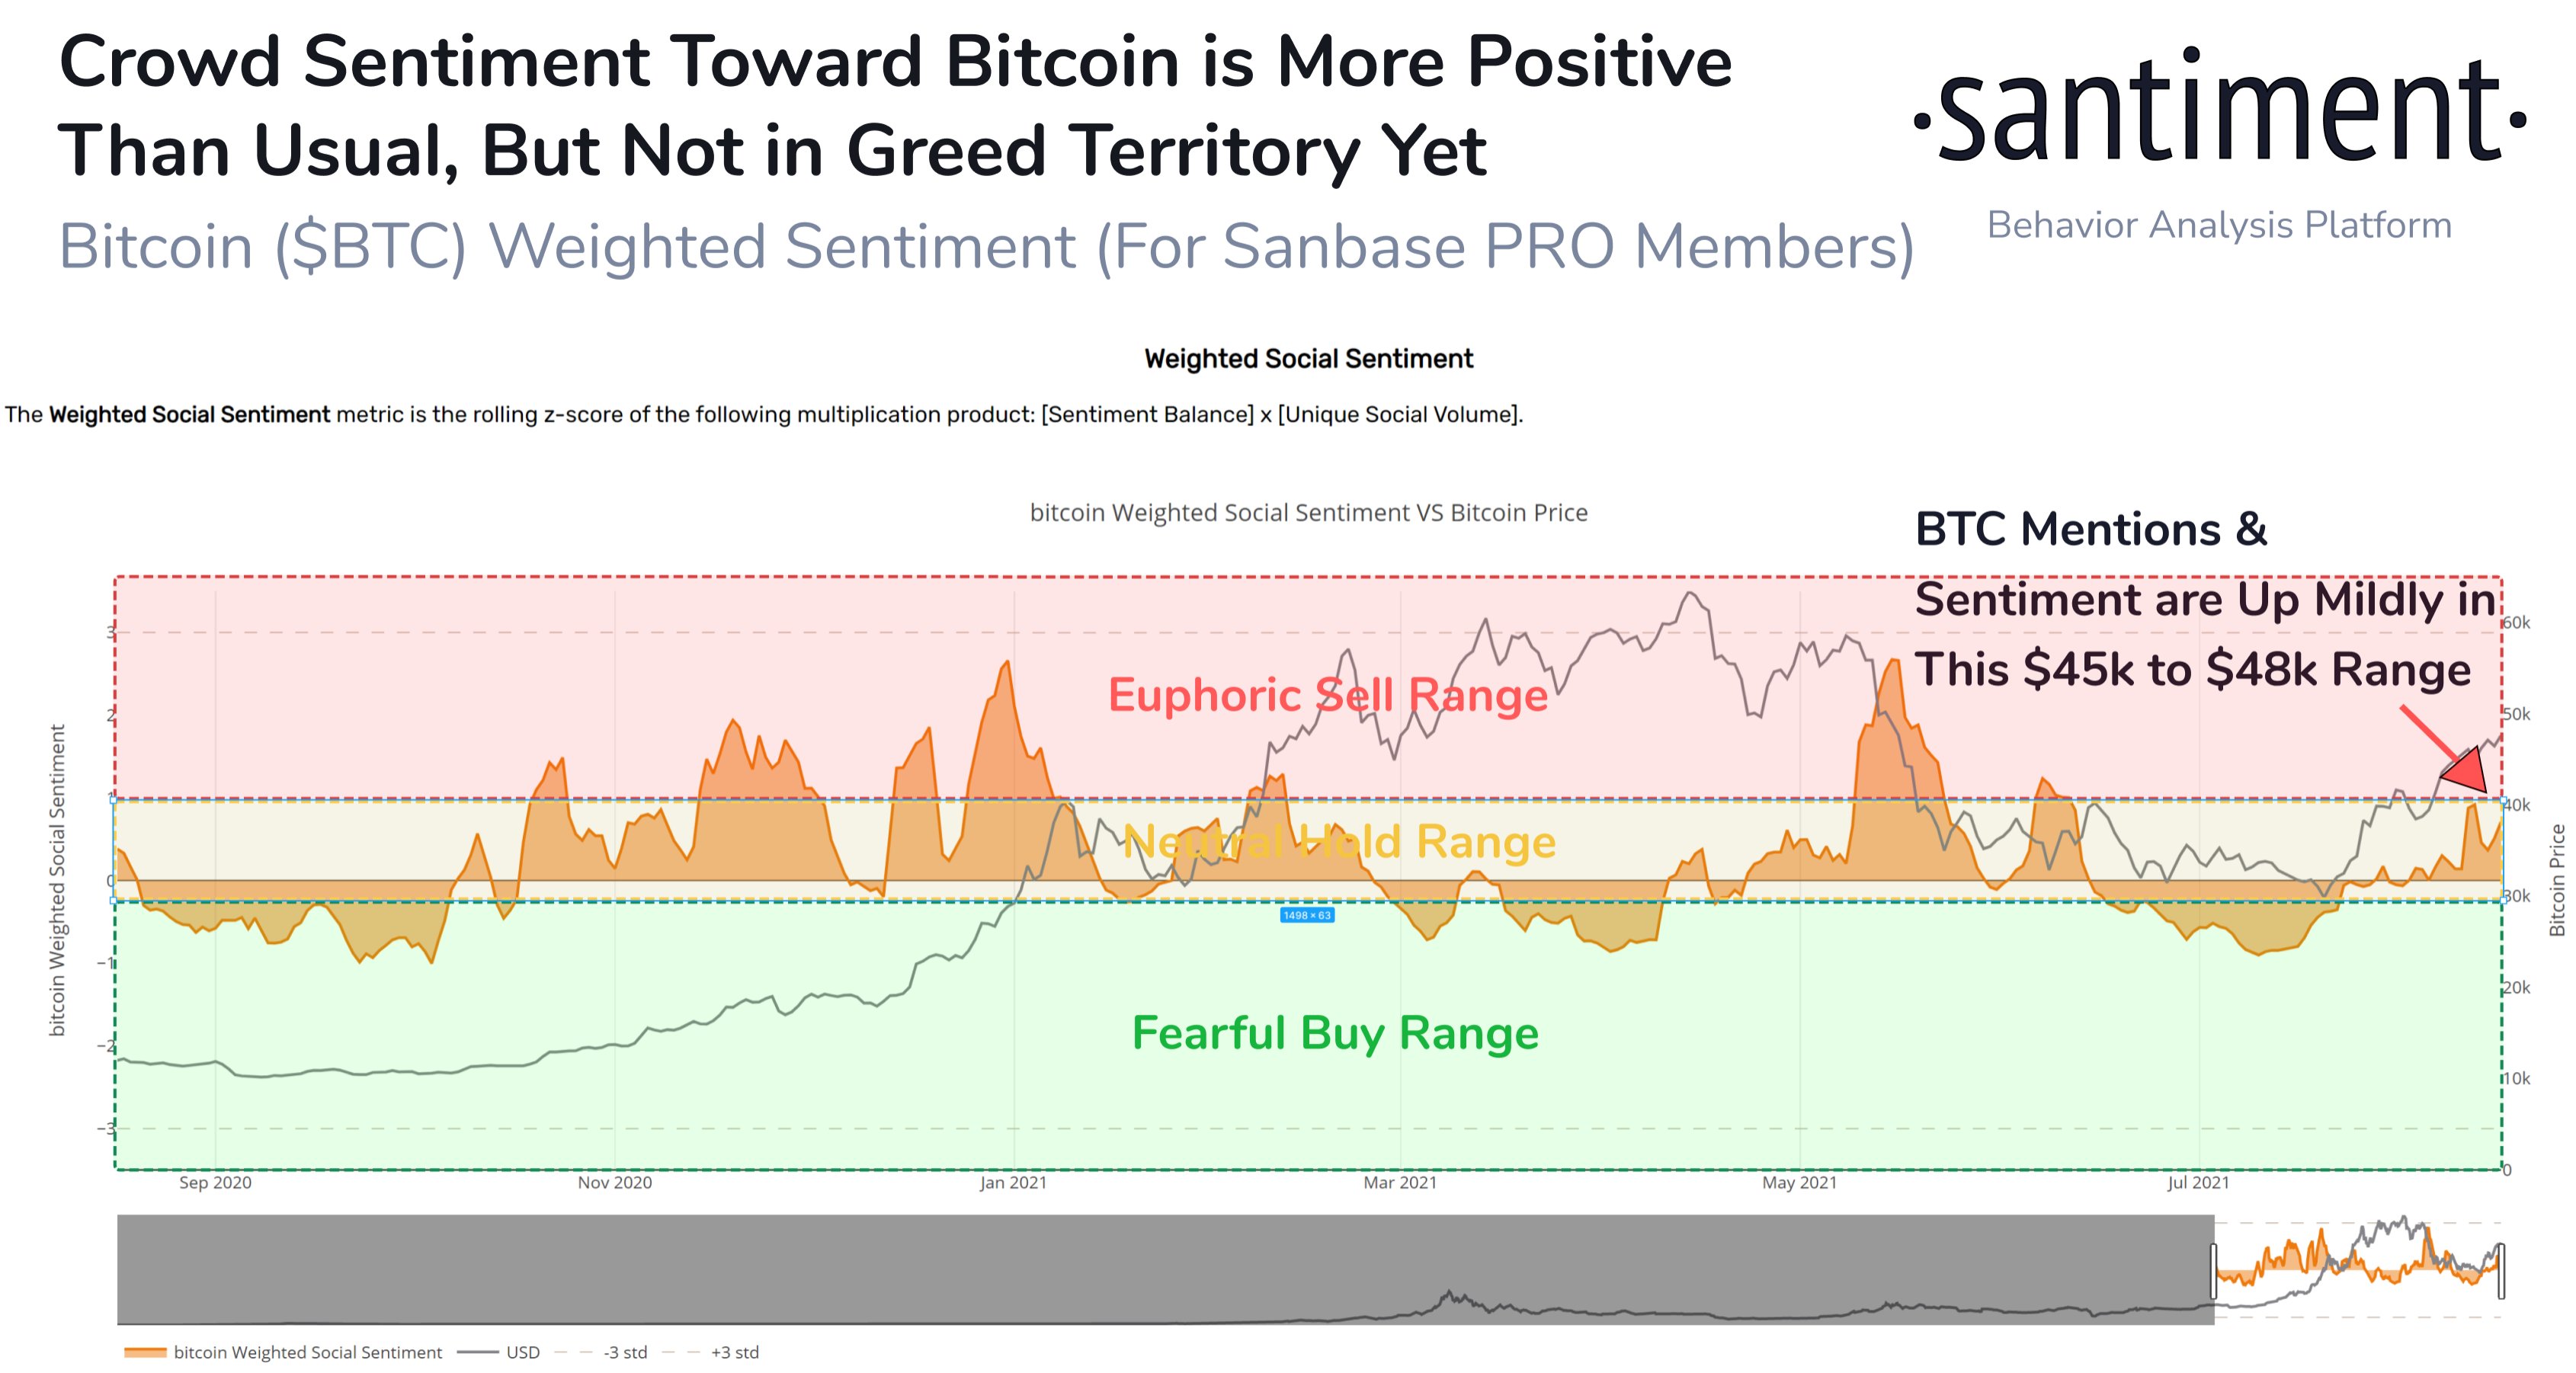 Cena Bitcoinu sklouzla pod 45 000 dolarů, ale sentiment zůstává pozitivní